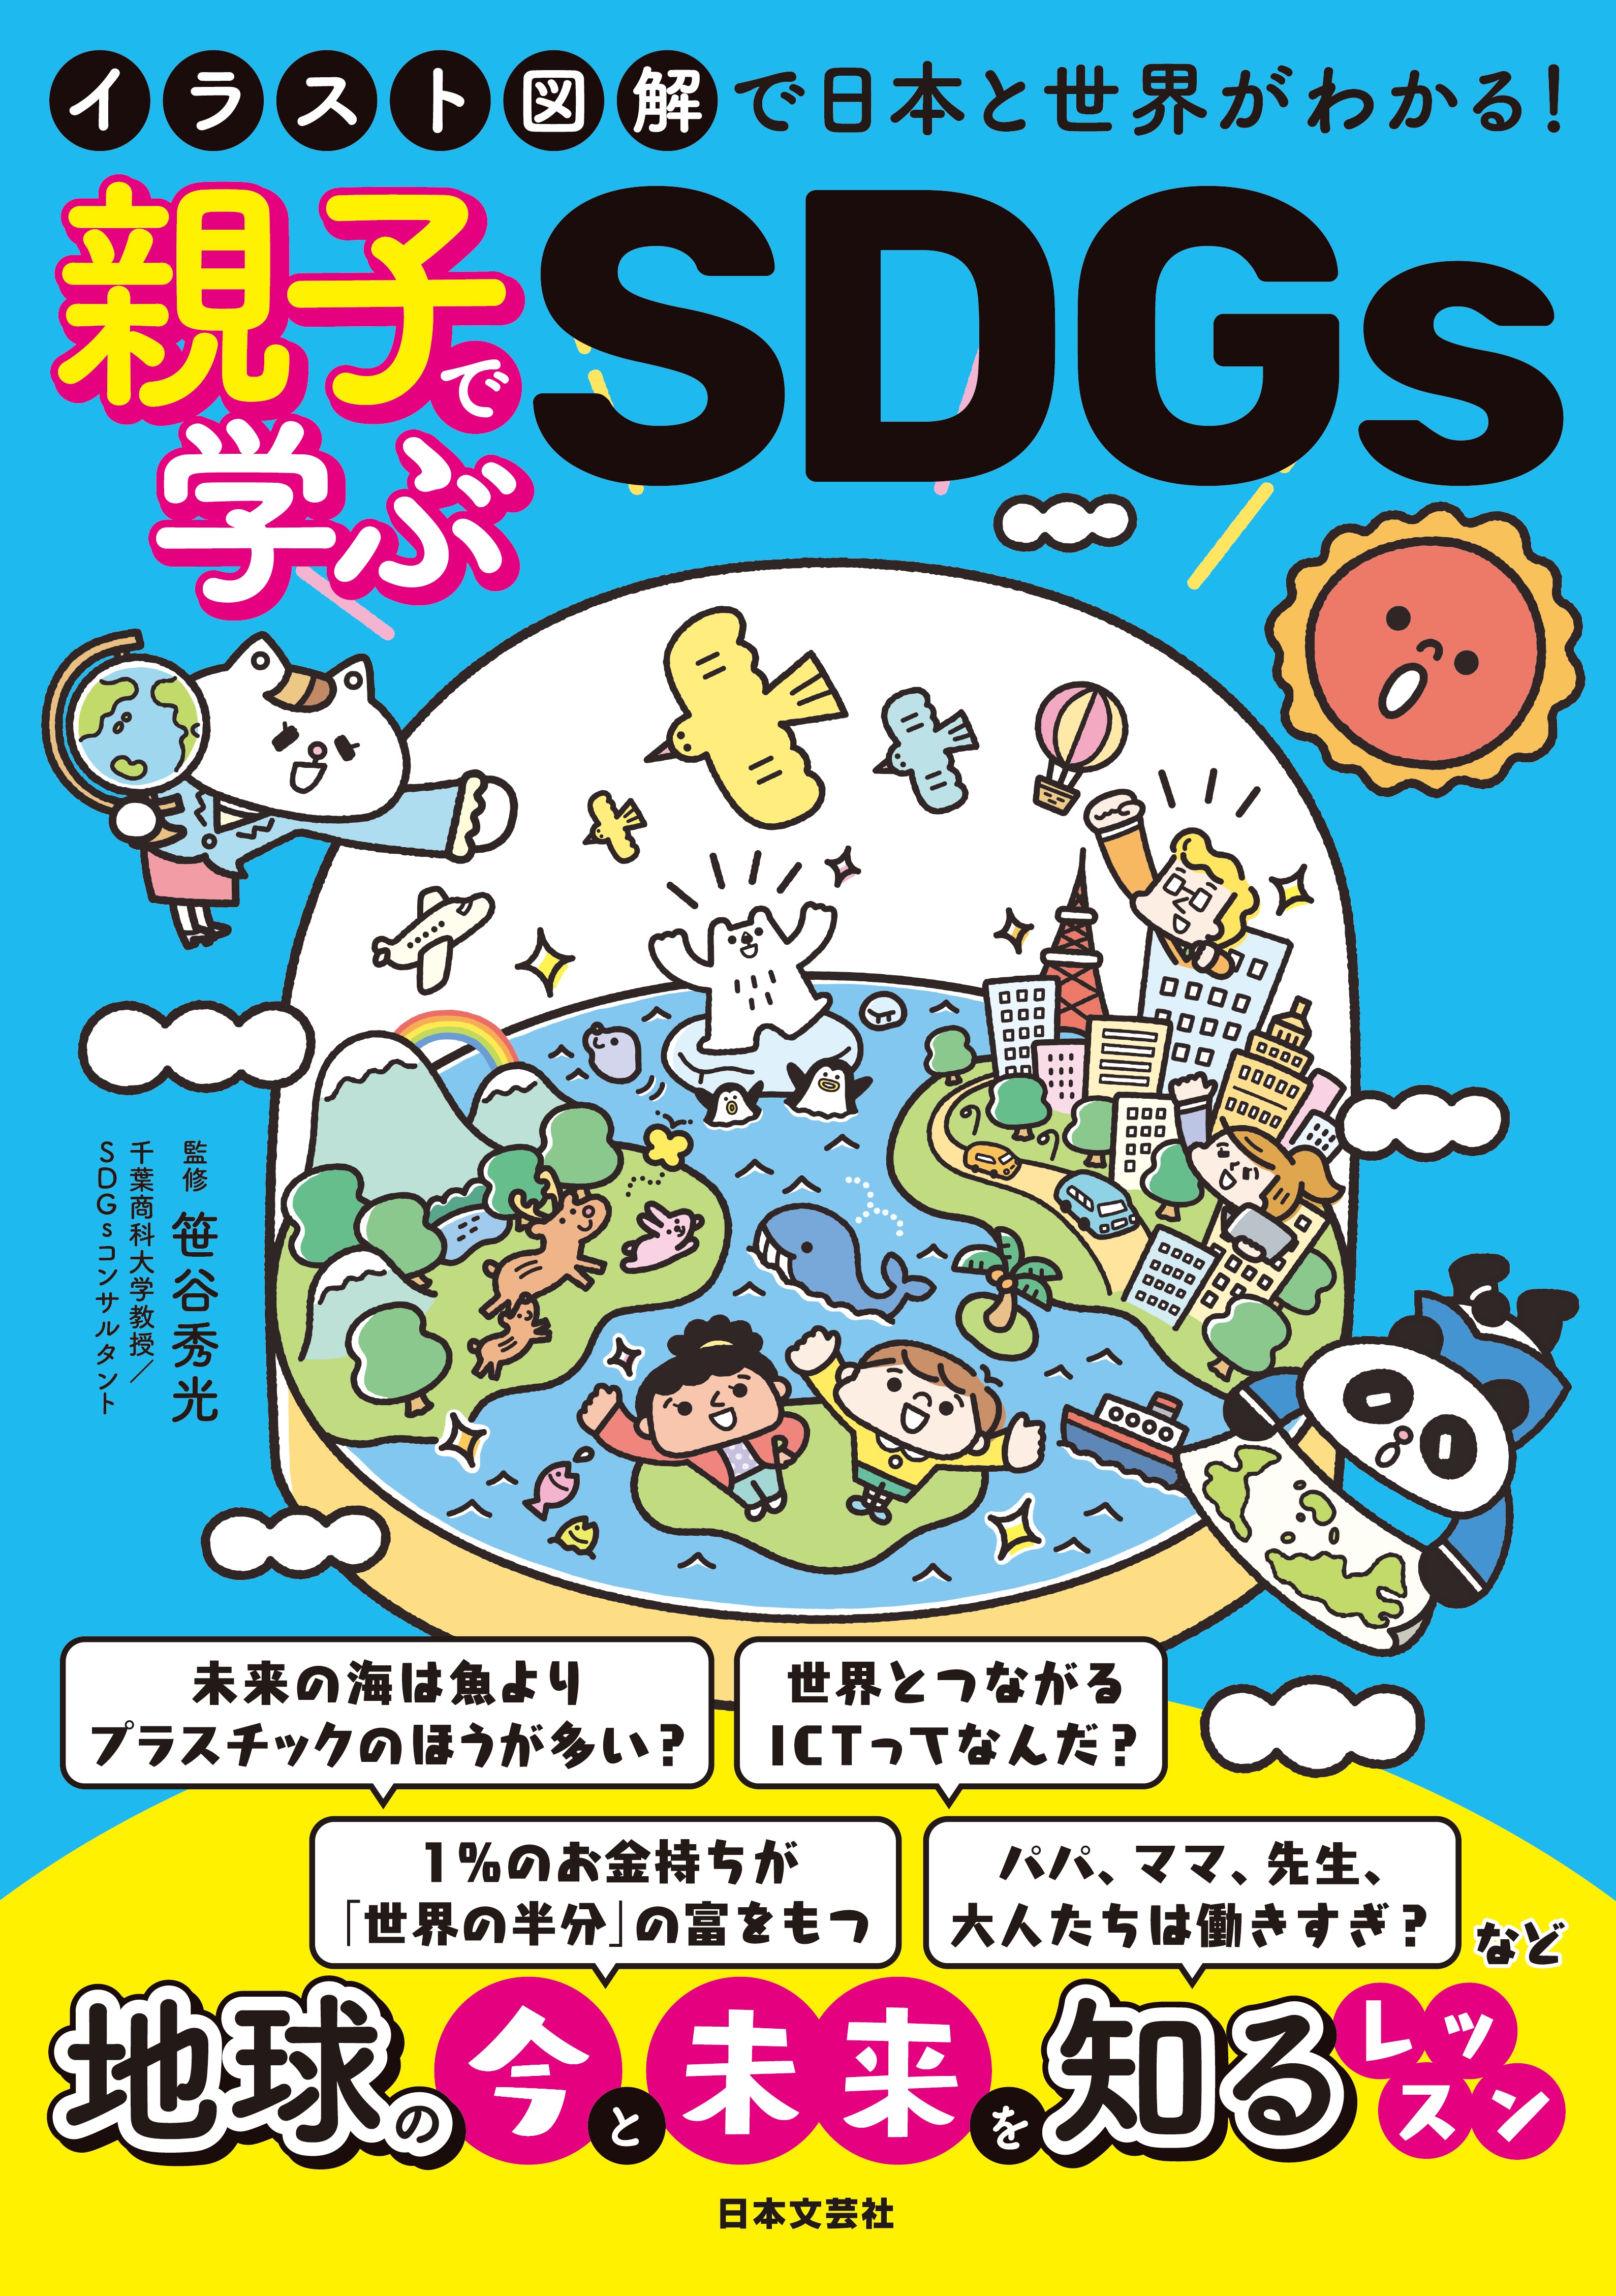 今 大注目の大切な話 Sdgs 身近な話題と具体的なデータから地球の 今 と 未来 を知るレッスン イラスト 図解で日本と世界がわかる 親子で学ぶsdgs Presswalker